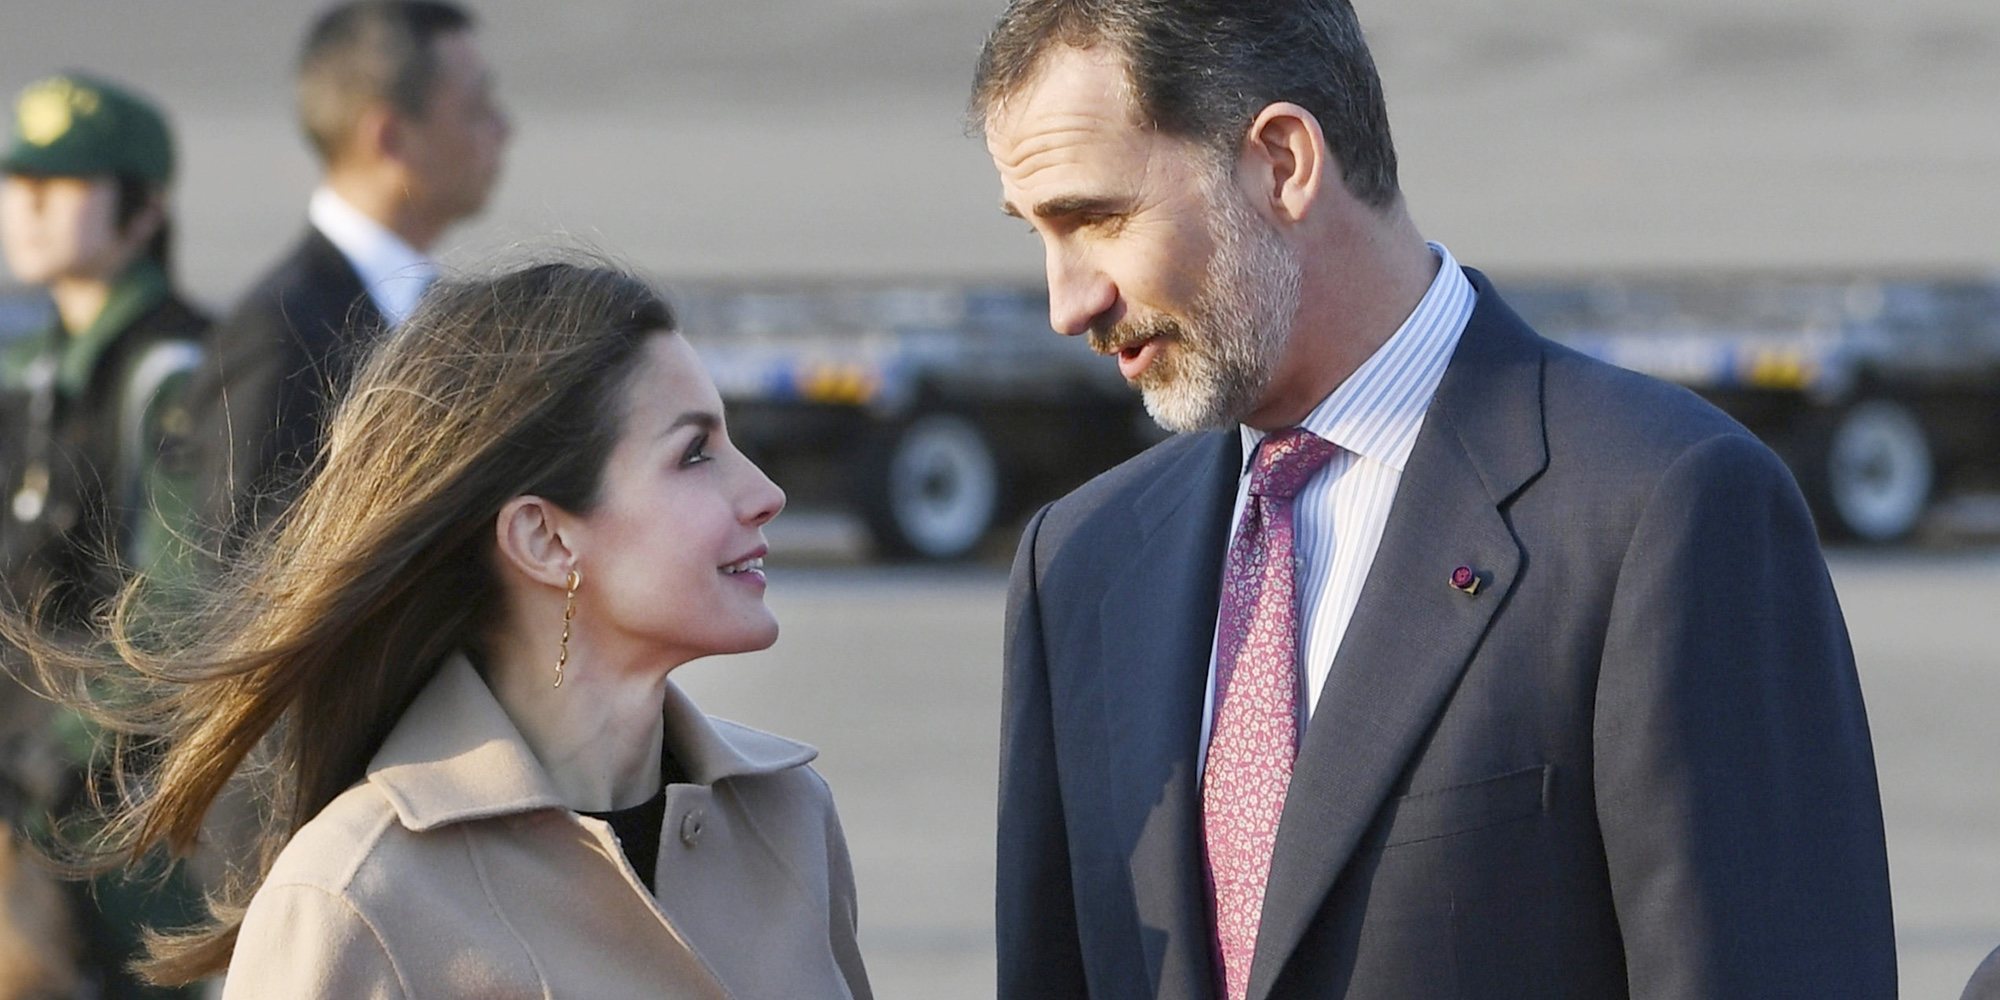 El amor de los Reyes Felipe y Letizia: un matrimonio con altibajos que remontó por el bien de sus hijas y de la Corona